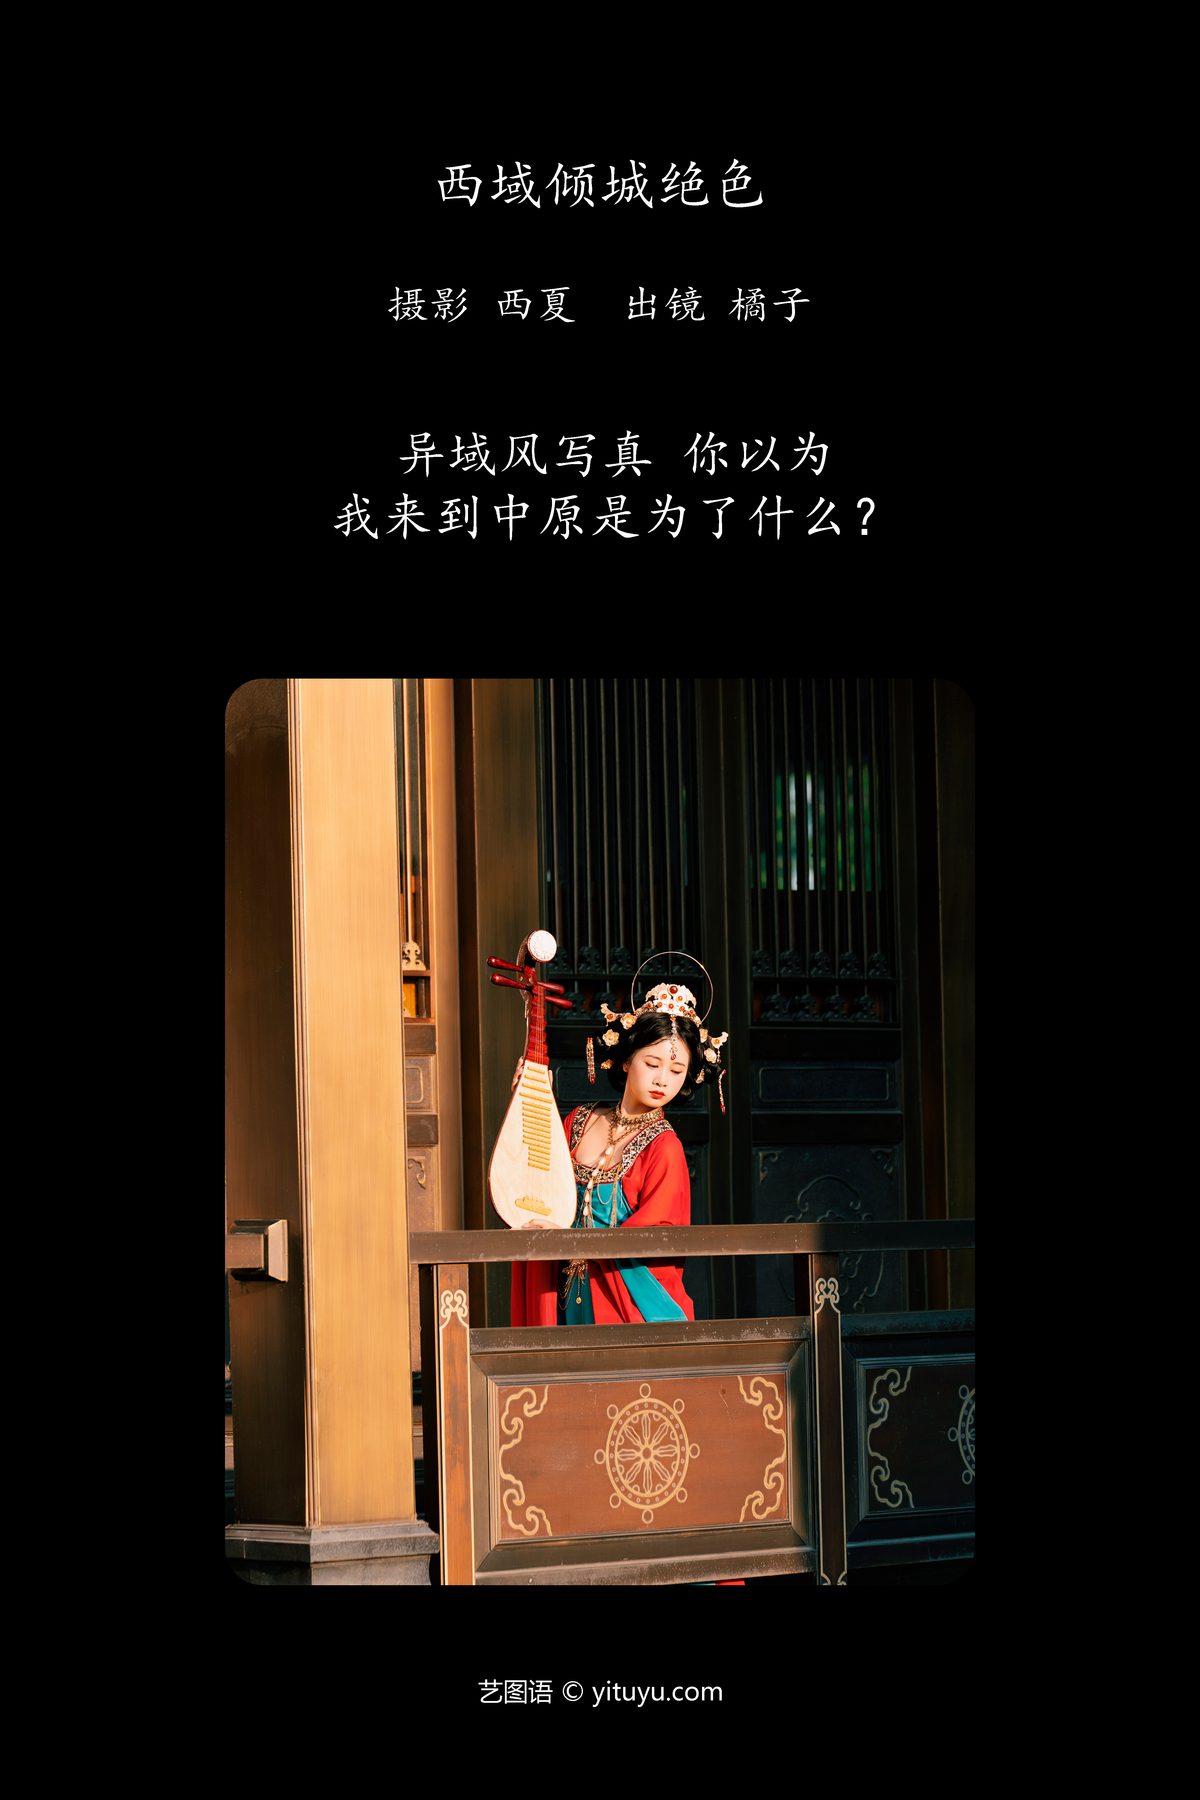 YiTuYu艺图语 Vol 5778 Cheng Zi Shu 0002 6938512627.jpg